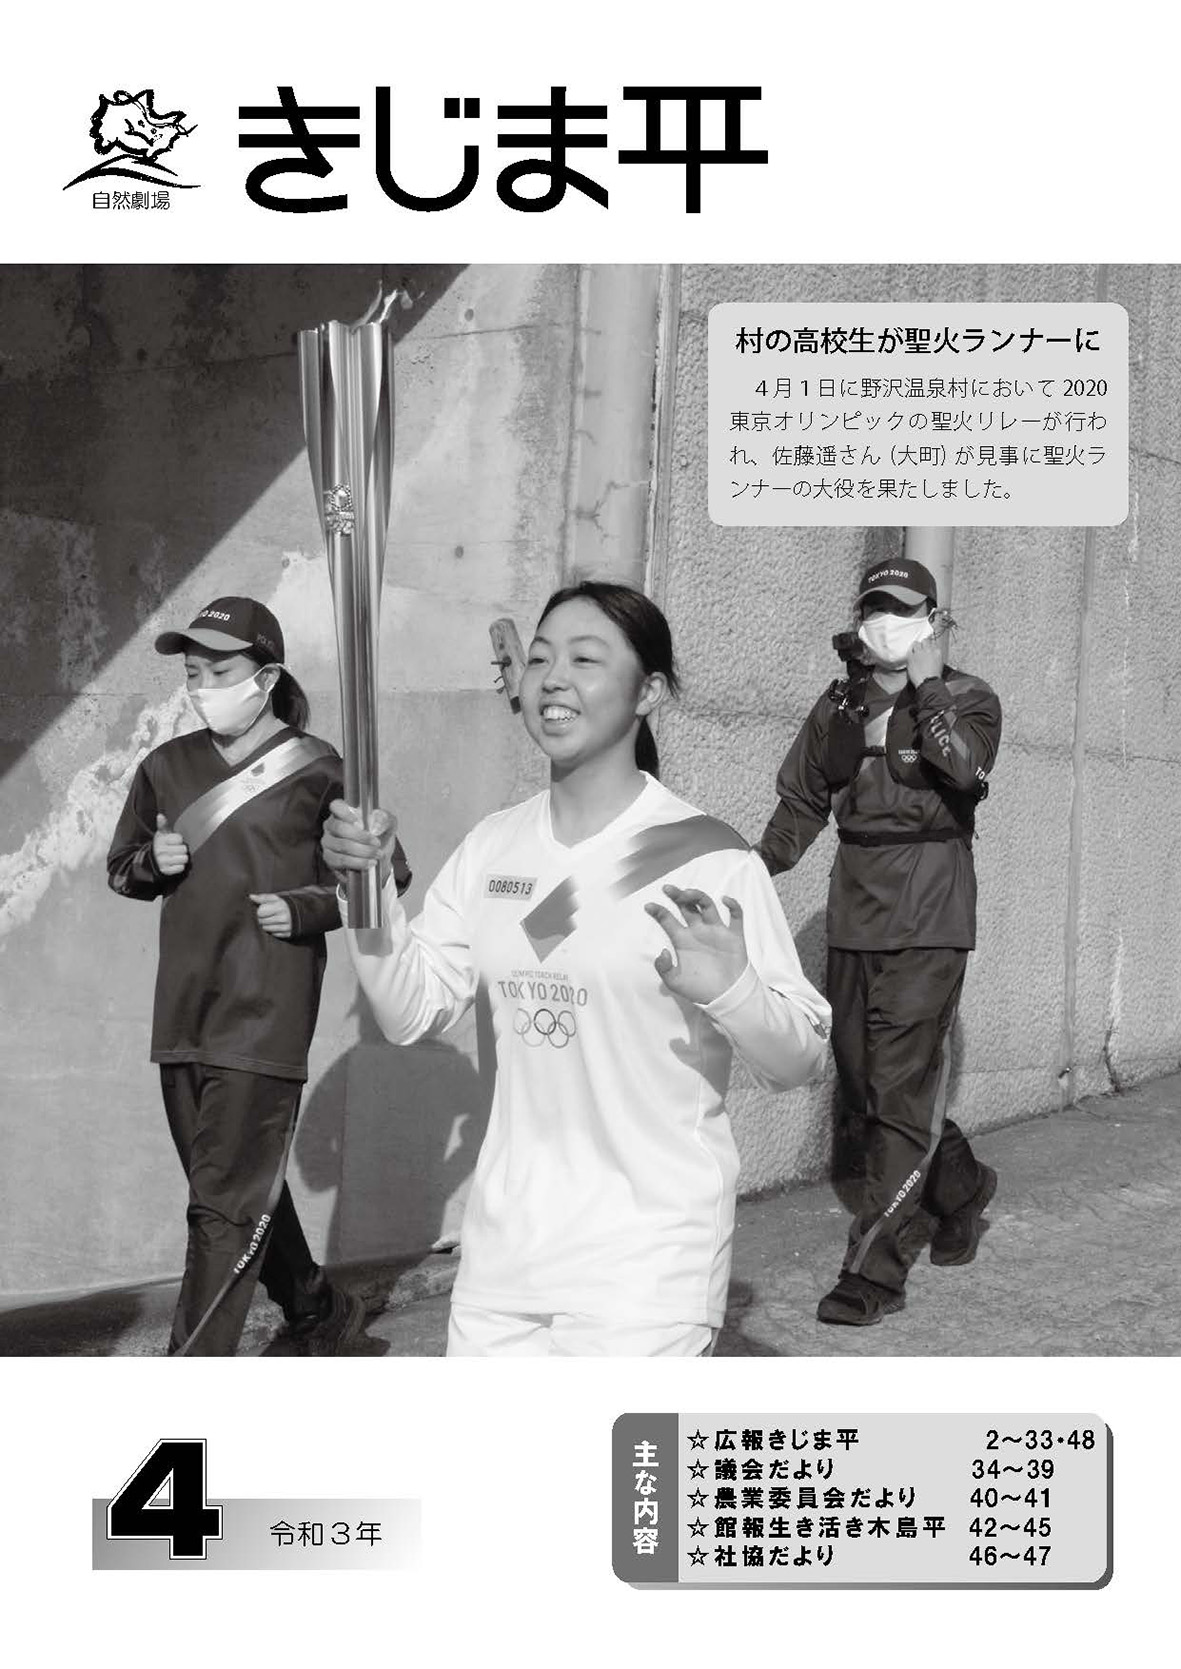 2020東京オリンピックの聖火リレーでランナーとして走る佐藤遥さんの様子